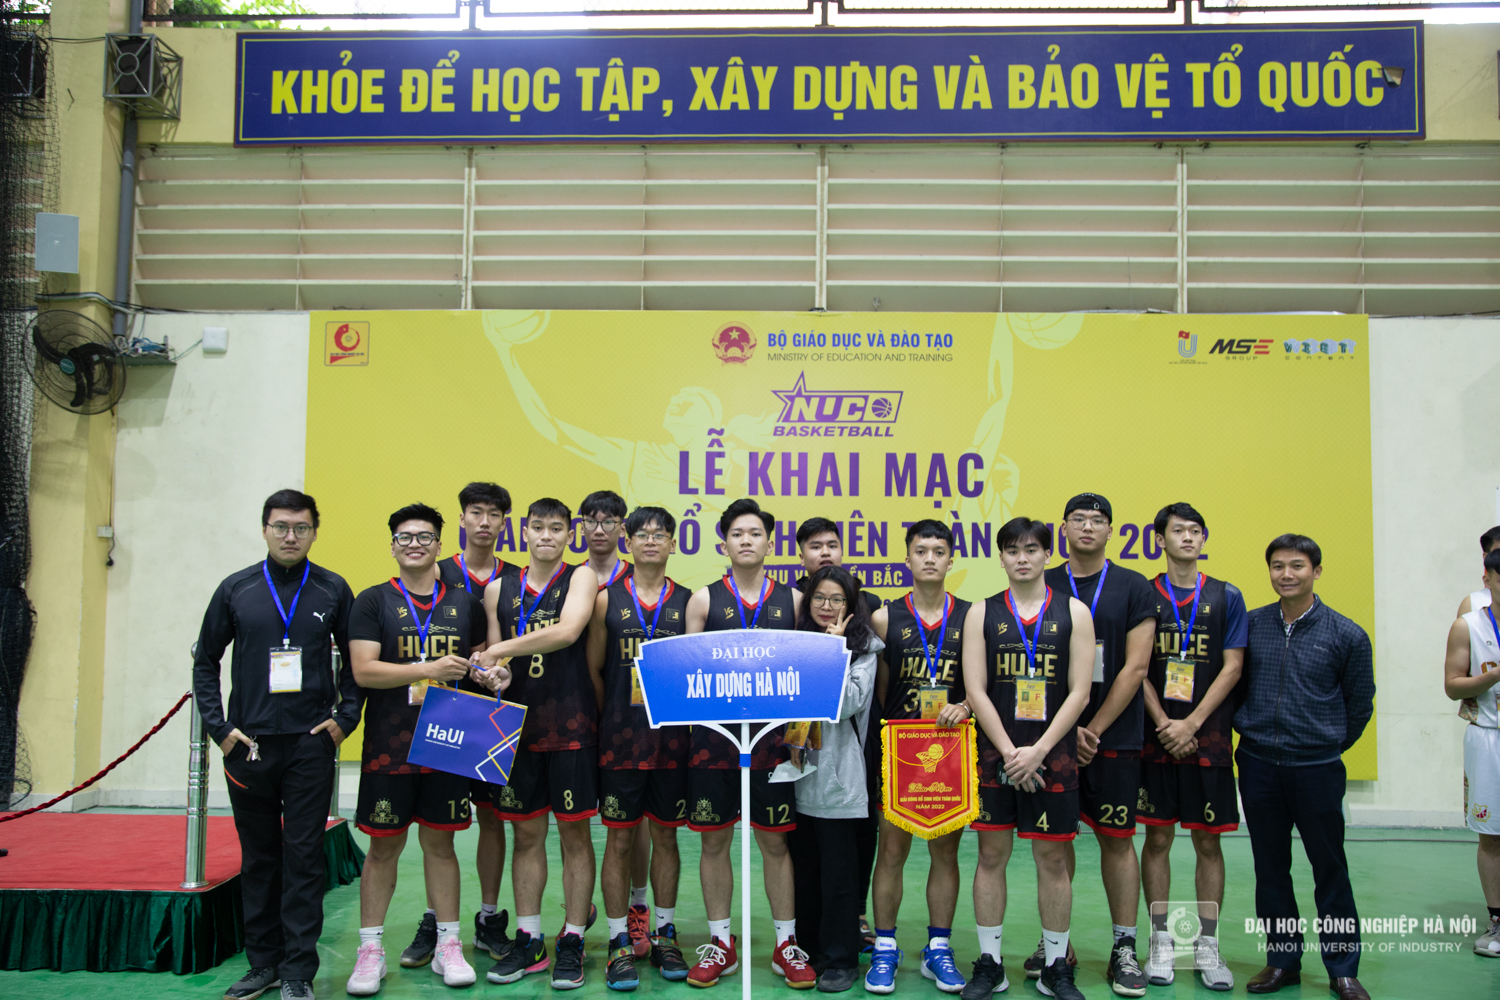 Khai mạc Giải bóng rổ sinh viên toàn quốc khu vực miền Bắc năm 2022 tại Đại học Công nghiệp Hà Nội